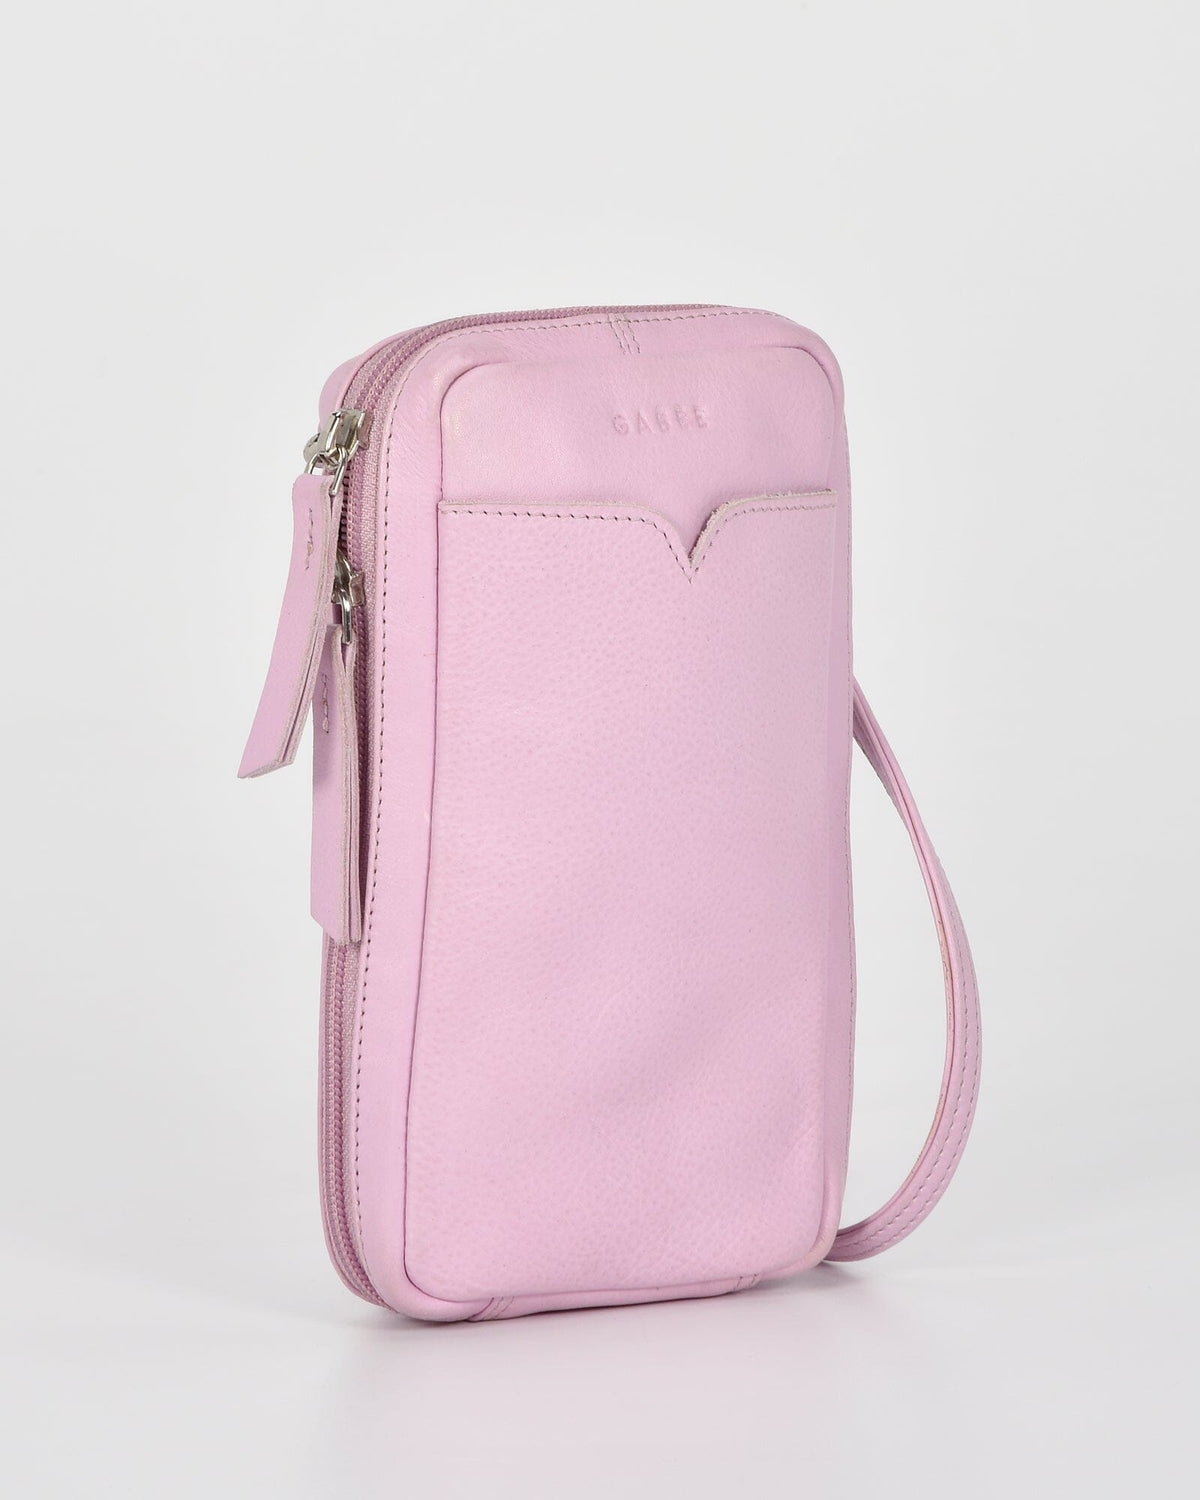 Kyra Leather Compact Carryall Bag